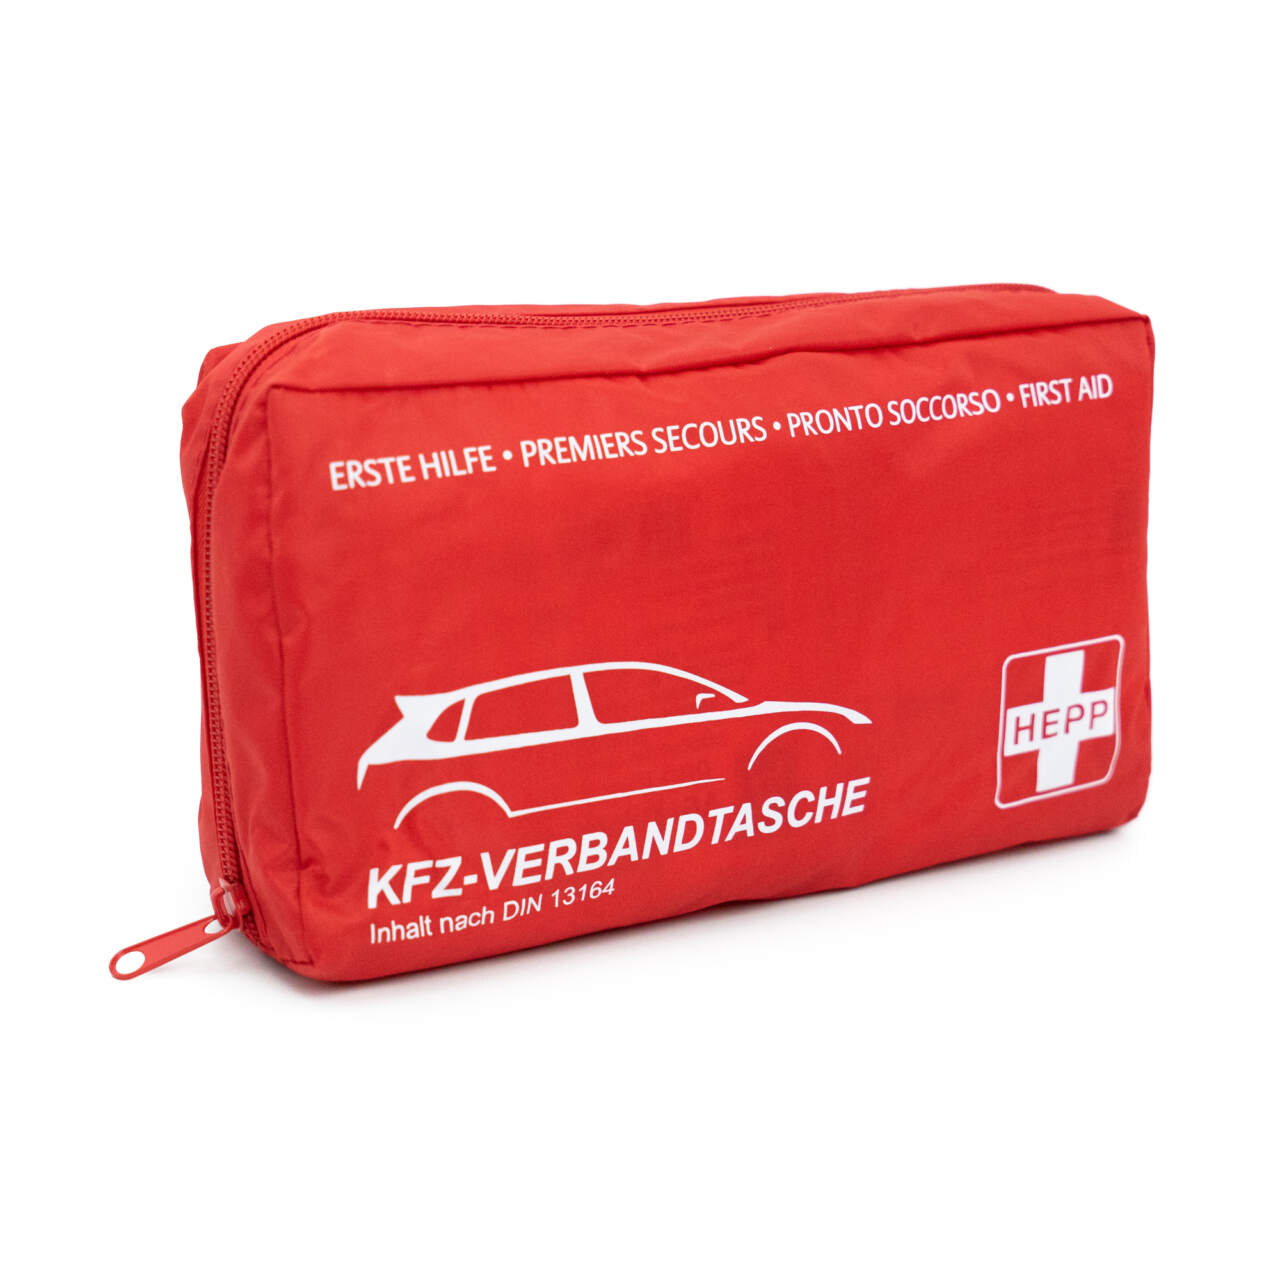 FLEXEO KFZ-Verbandtasche DIN 13164:2022, (1 St), Erste-Hilfe-Set